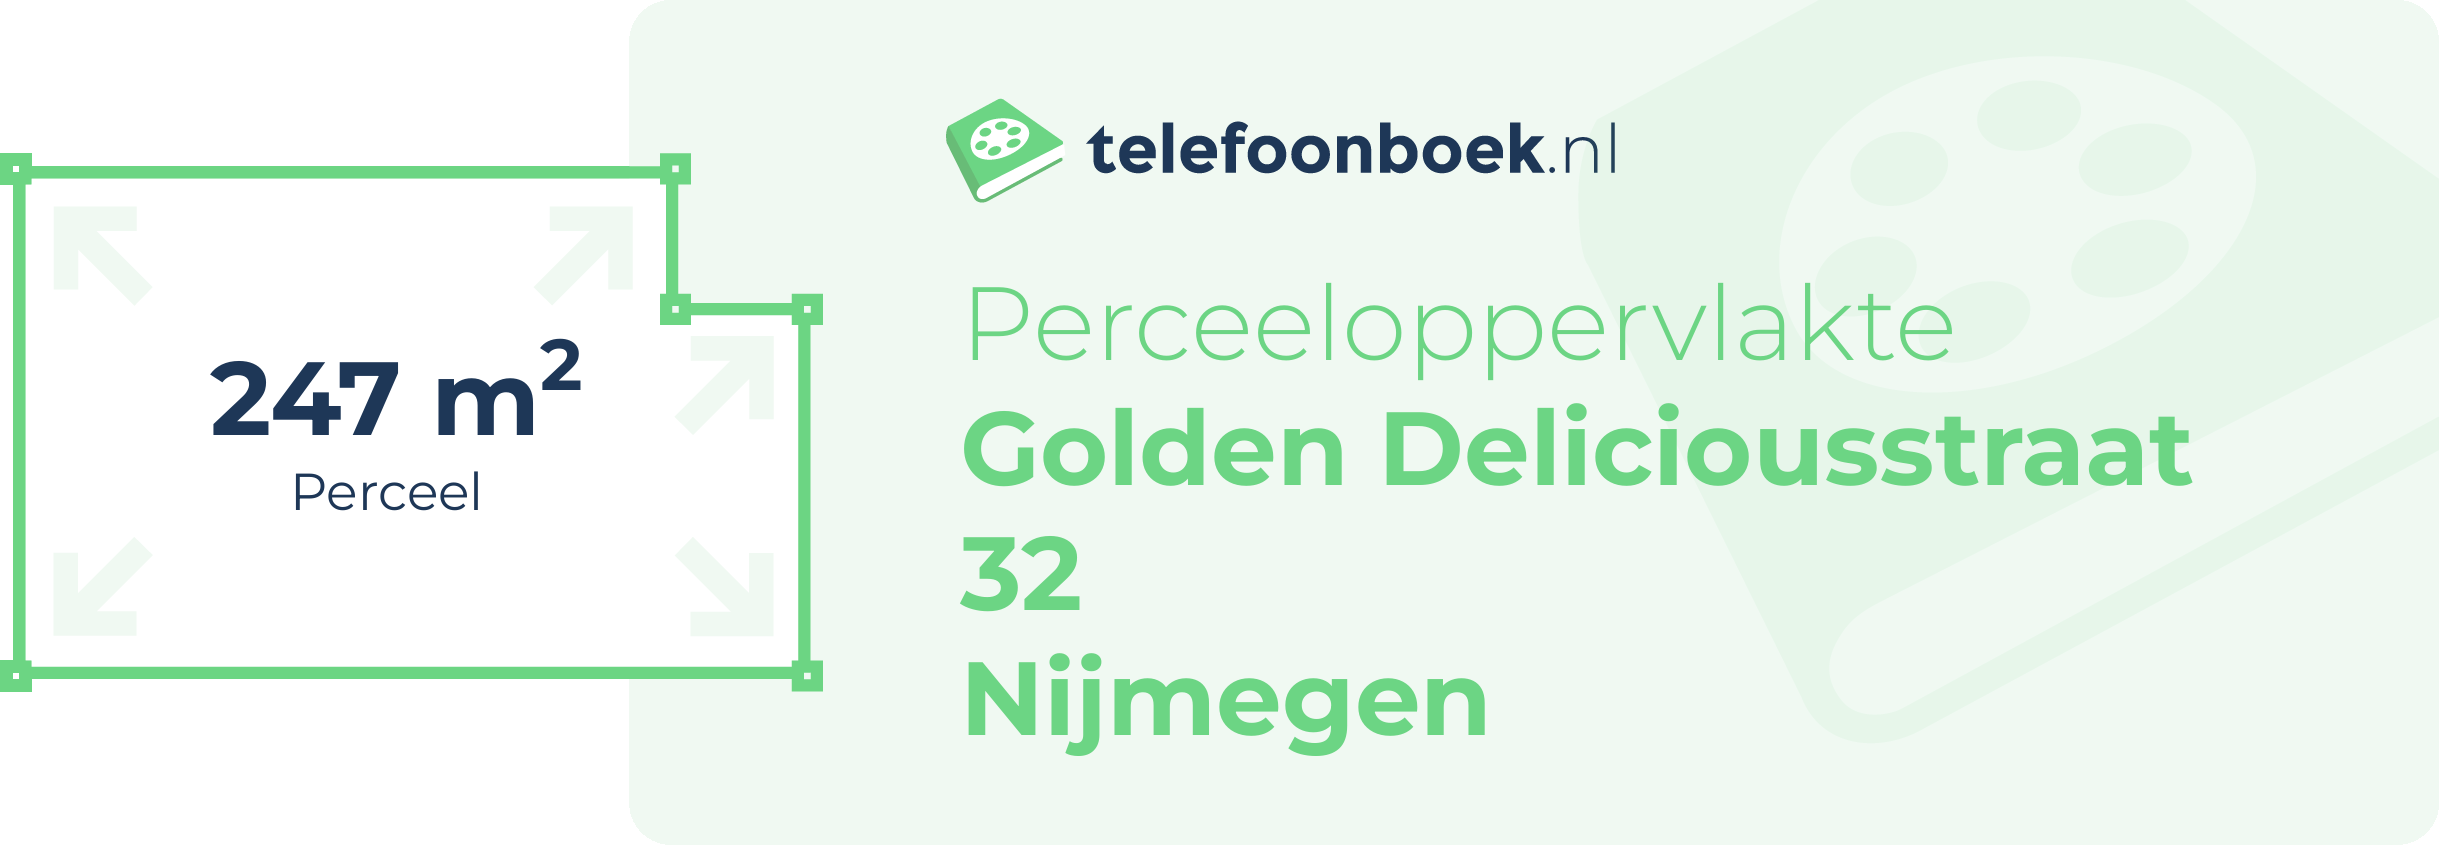 Perceeloppervlakte Golden Deliciousstraat 32 Nijmegen